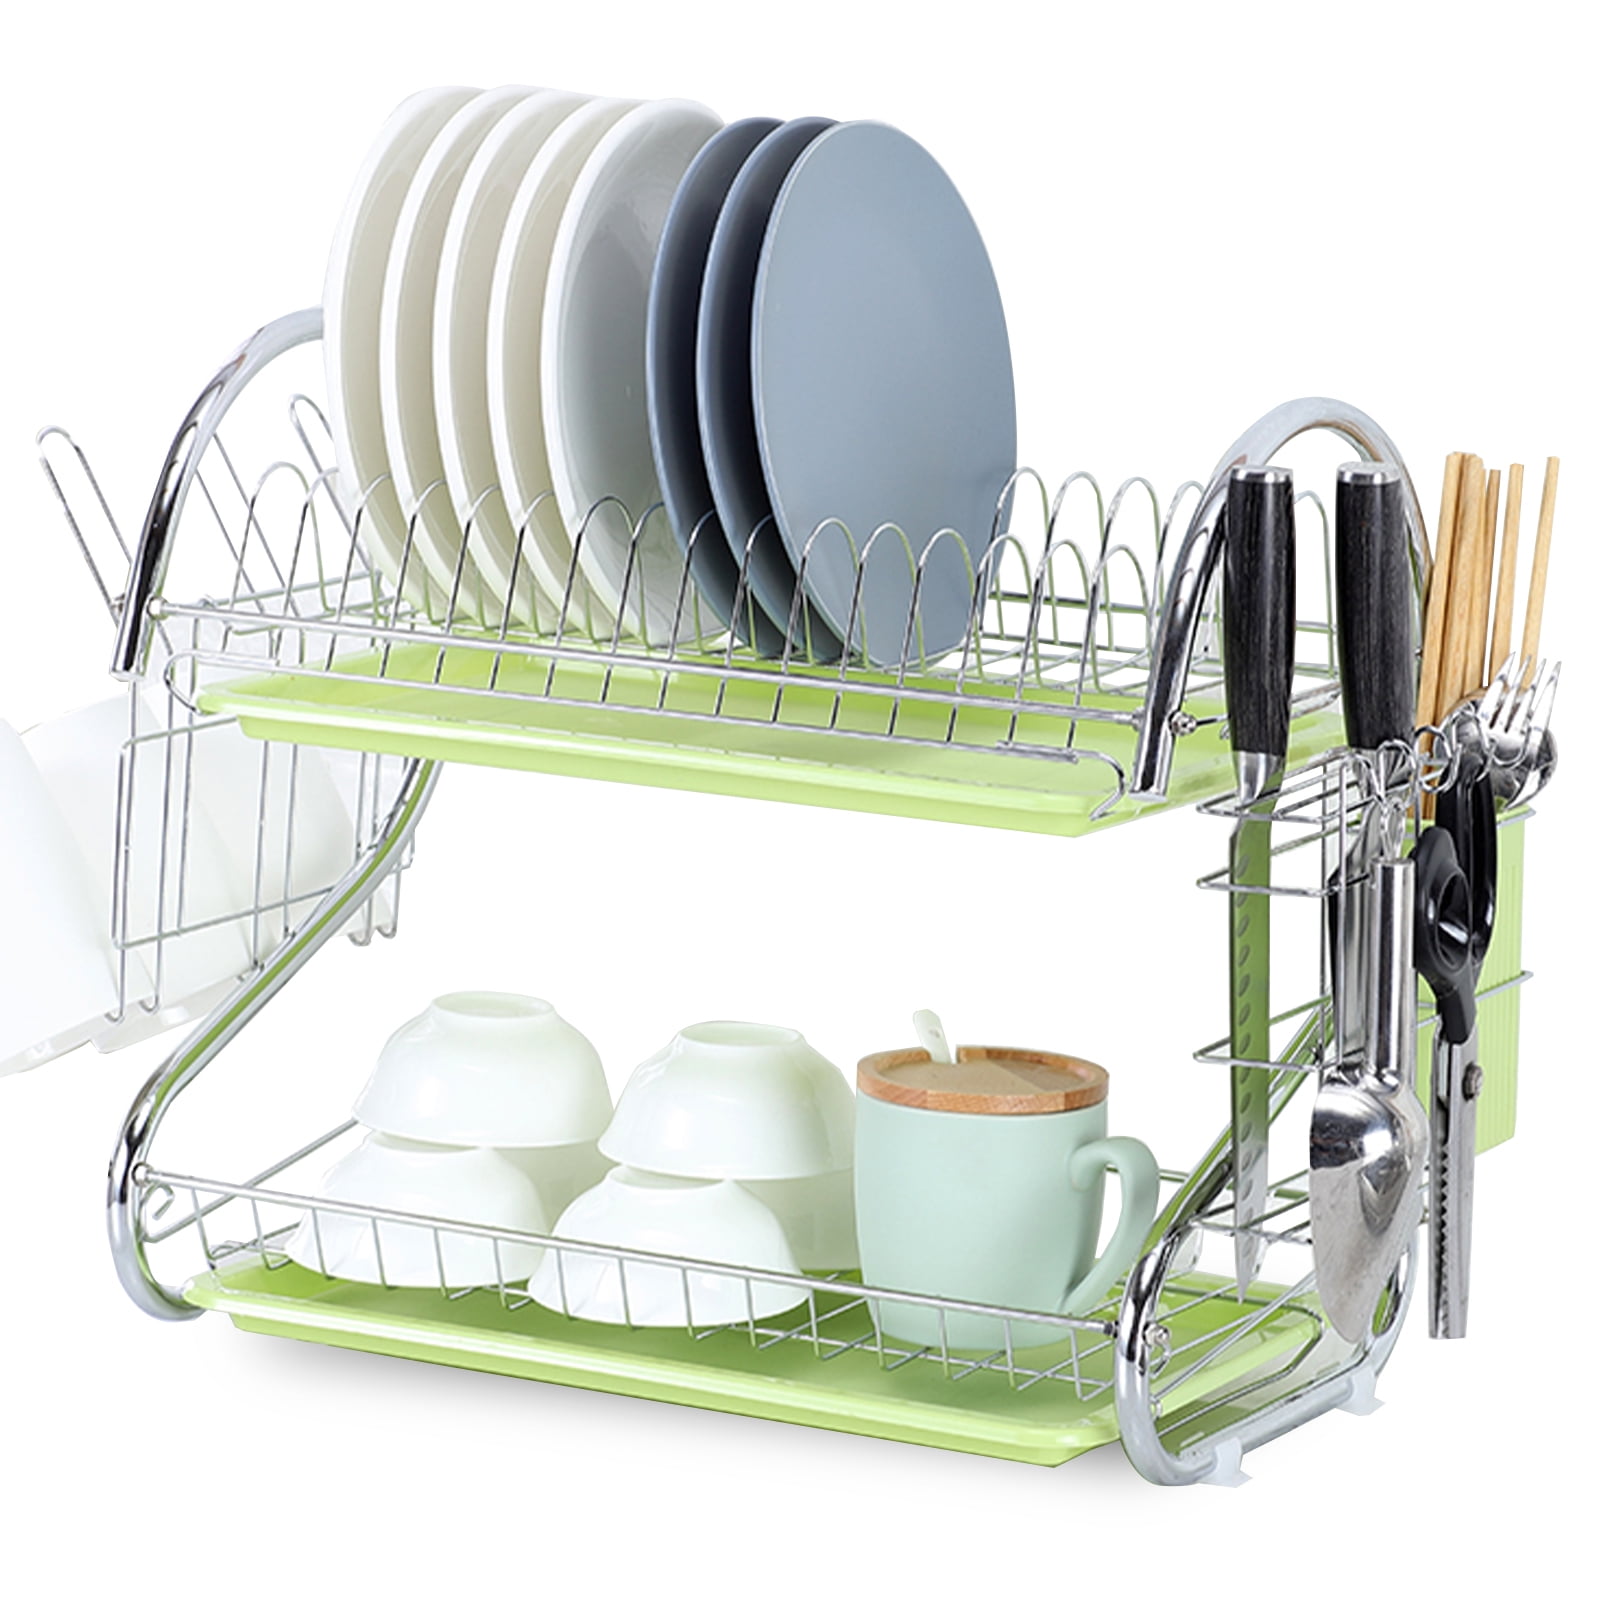 Details about   Hanging Cutlery Rack Dry Drainer Organizer Holder Kitchen Utensil Storage Basket